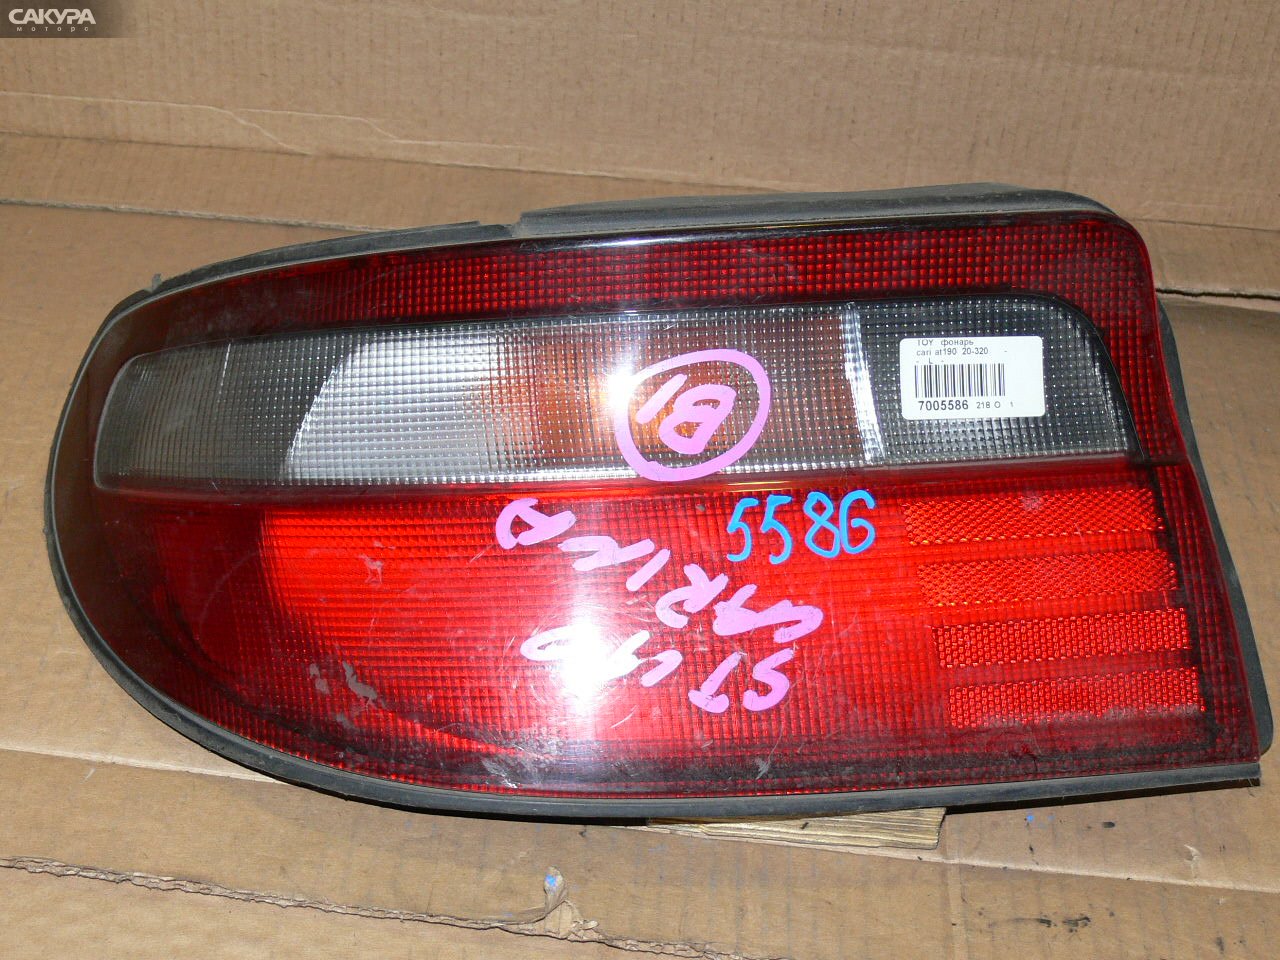 Фонарь стоп-сигнала левый Toyota Carina AT190 20-320: купить в Сакура Иркутск.